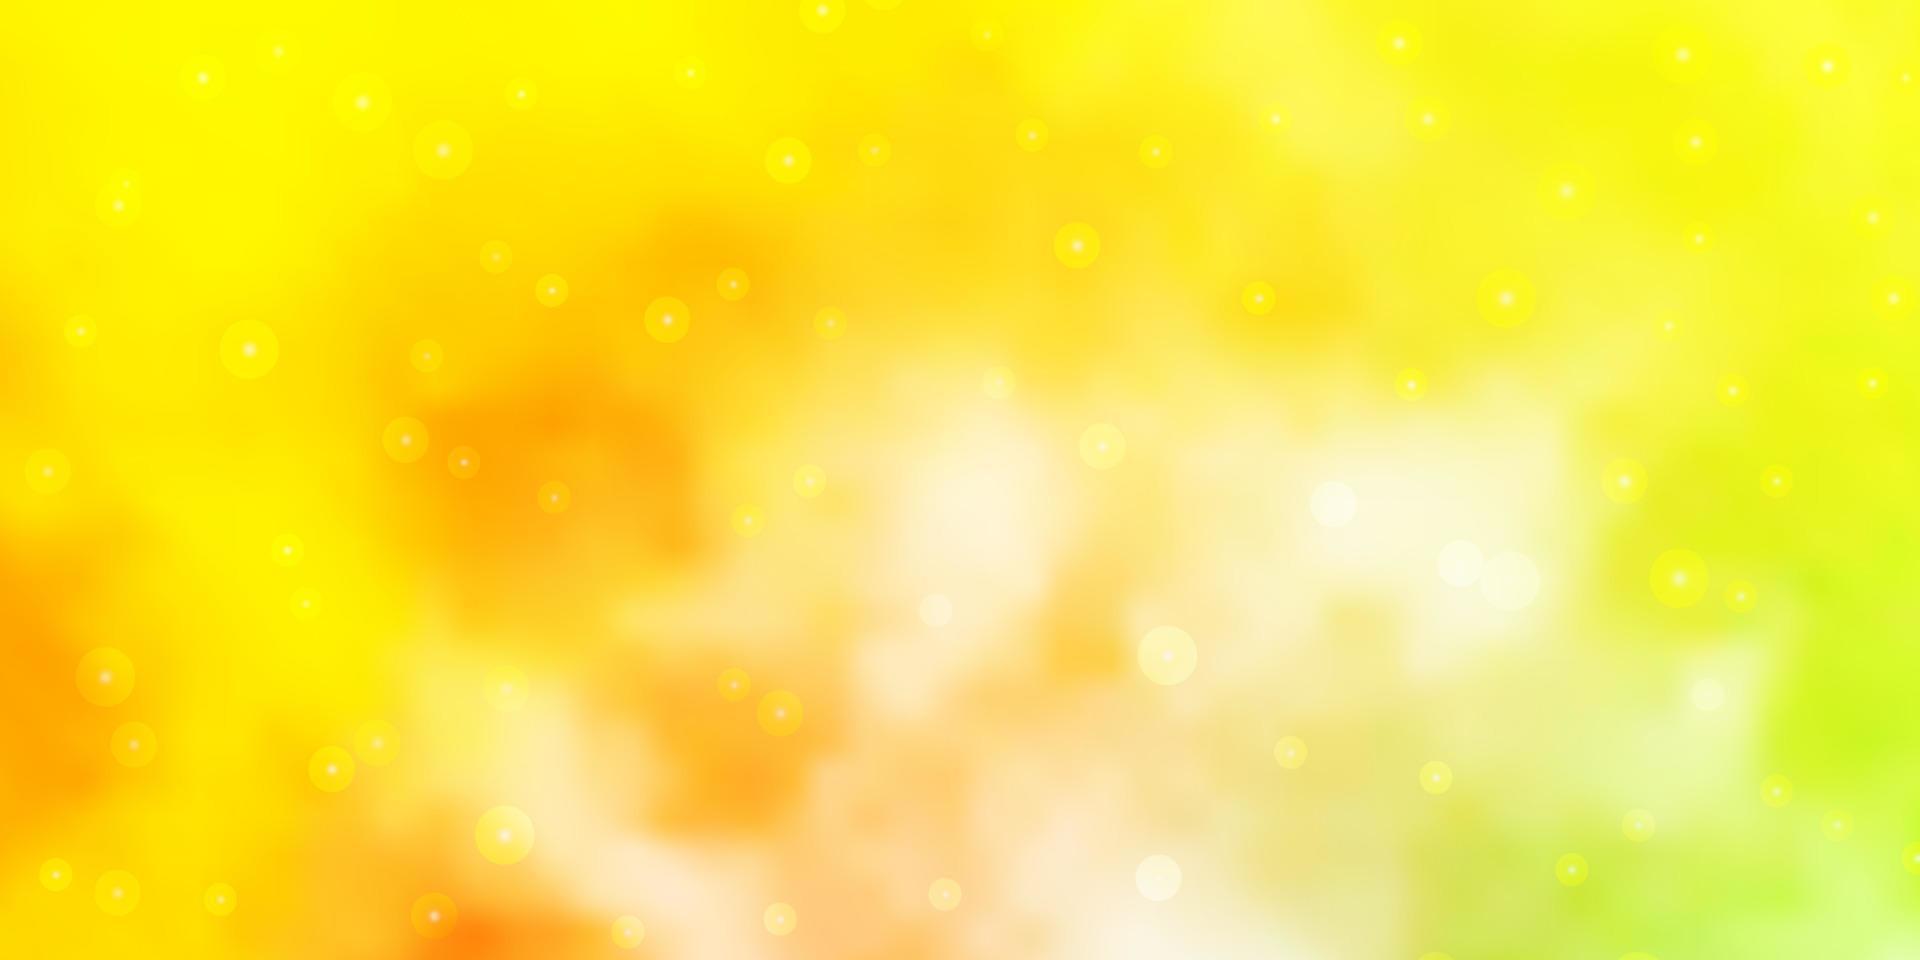 Fondo de vector verde claro, amarillo con estrellas de colores.